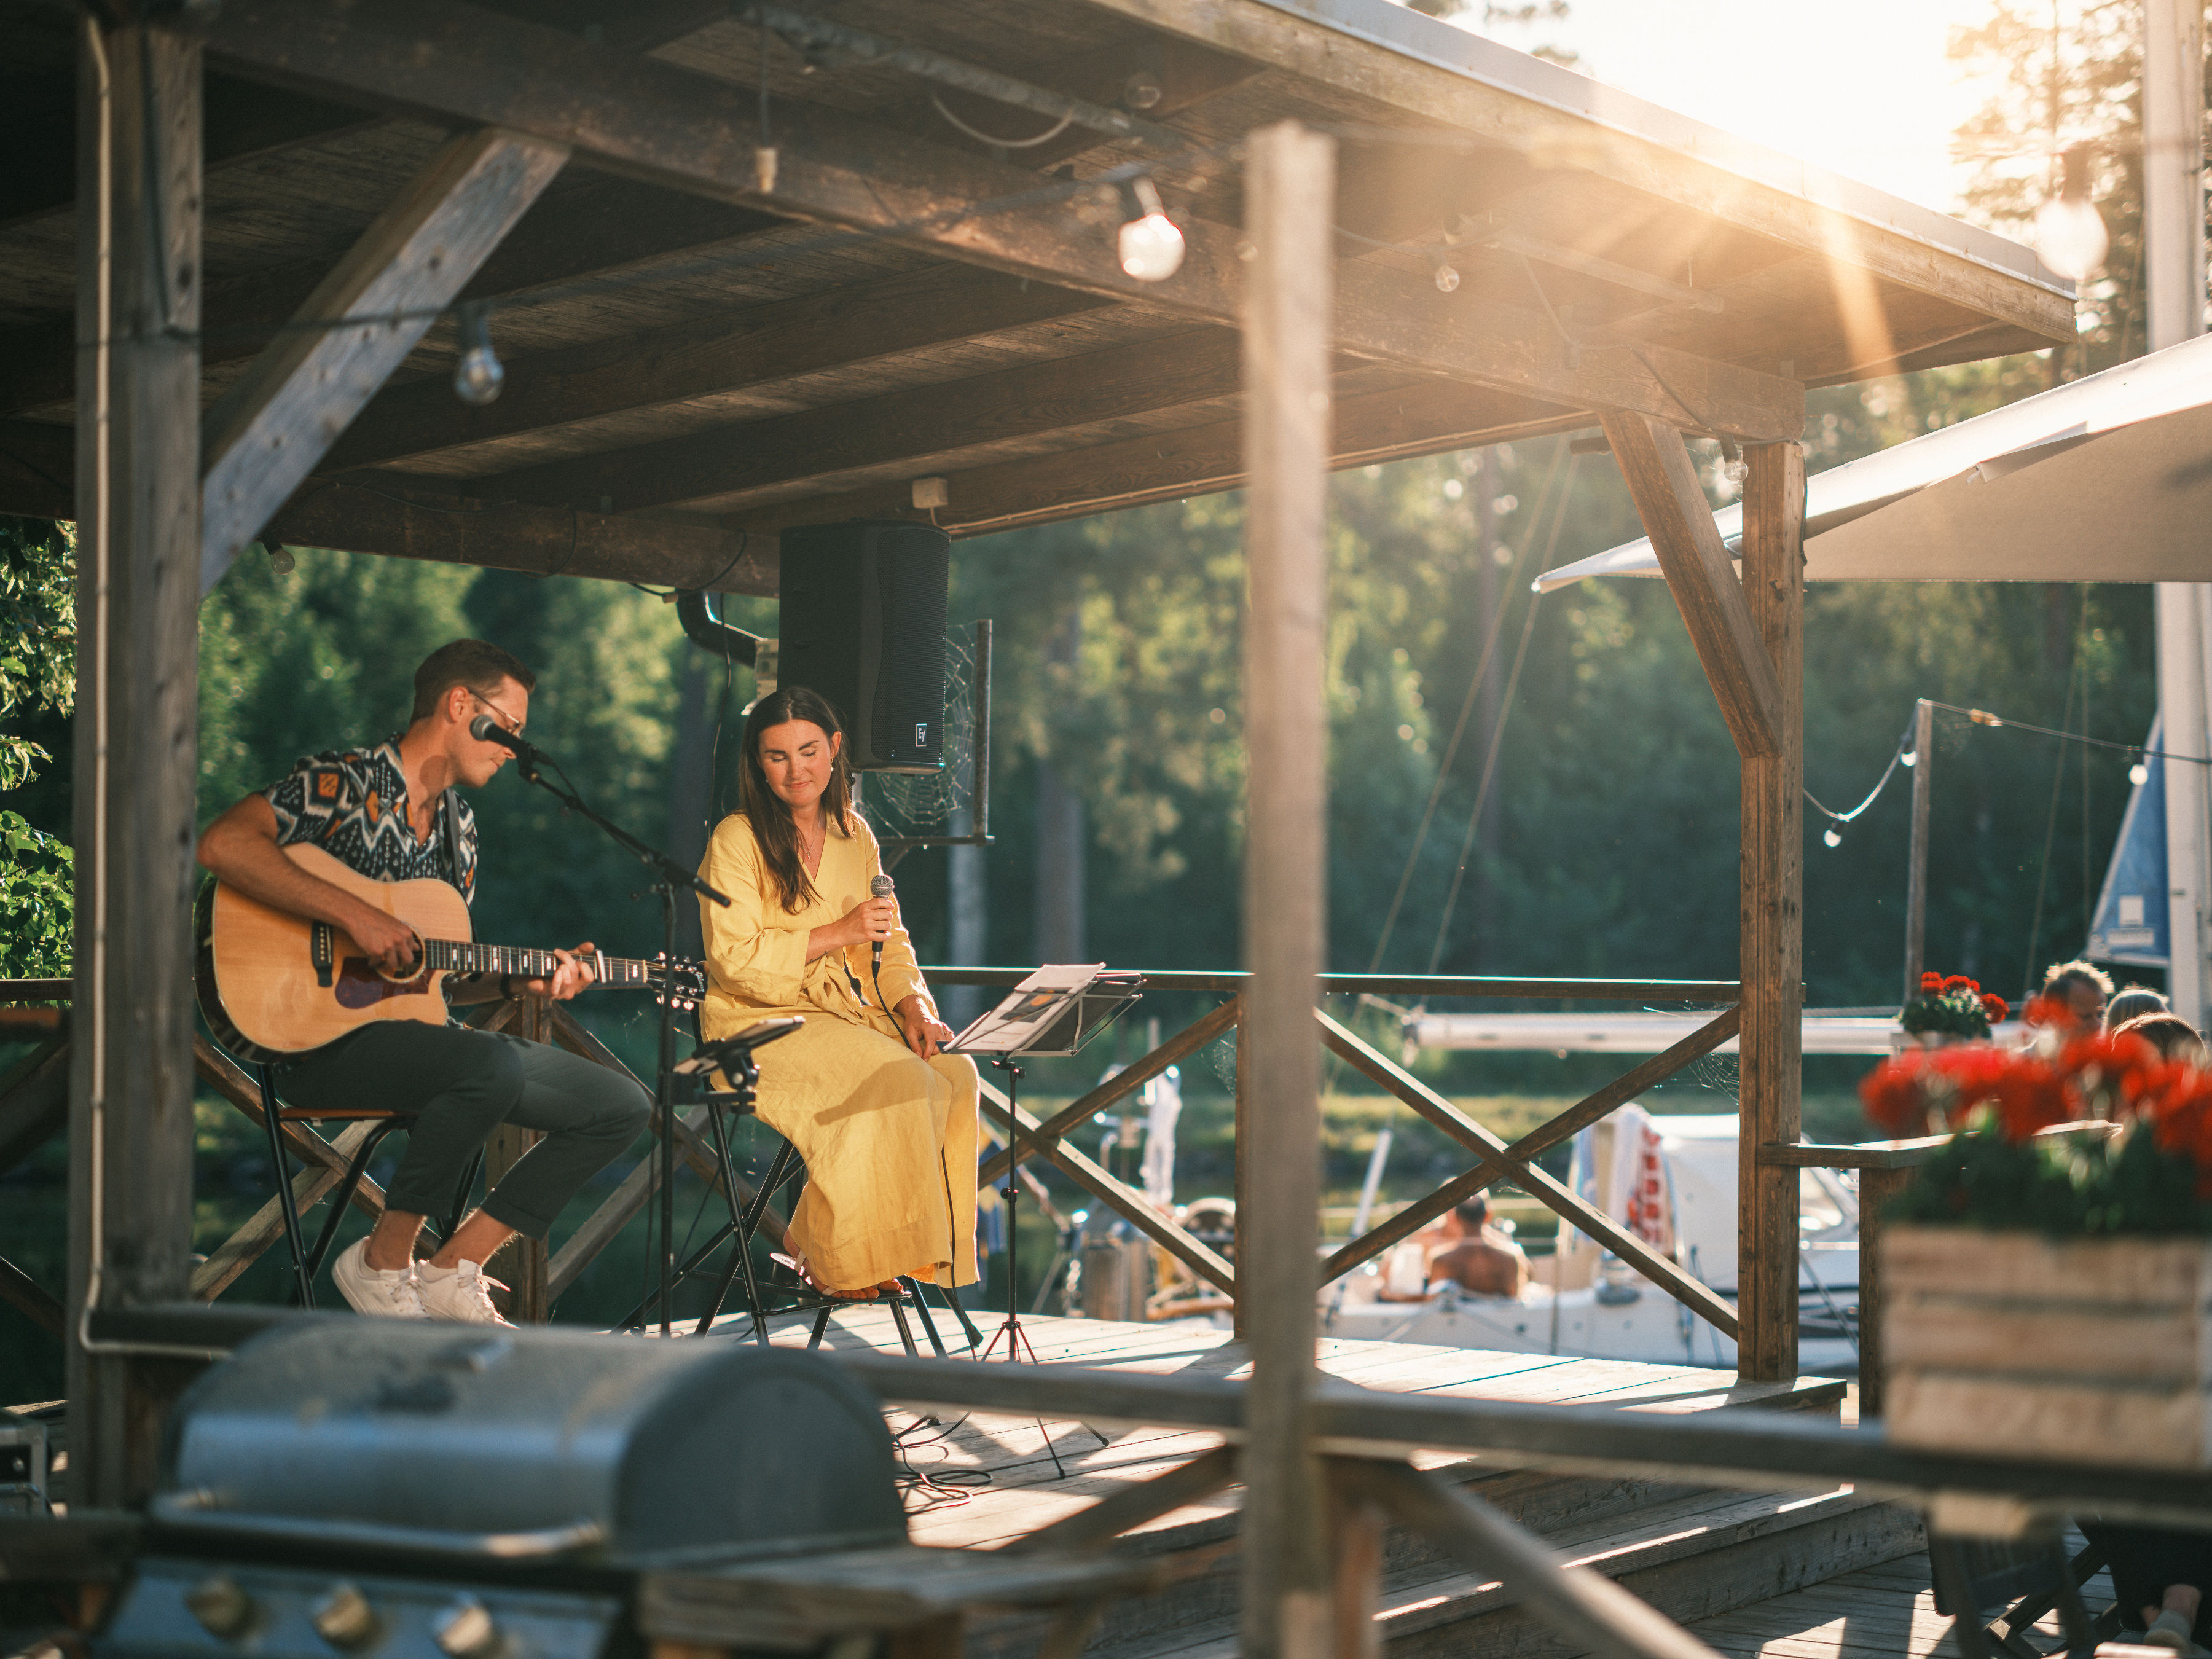 En solbränd person sitter på stol och spelar gitarr, bredvid person i långt mörkt hår och gul klänning som håller i en mikrofon. Båtar i bakgrunden. Solsken.